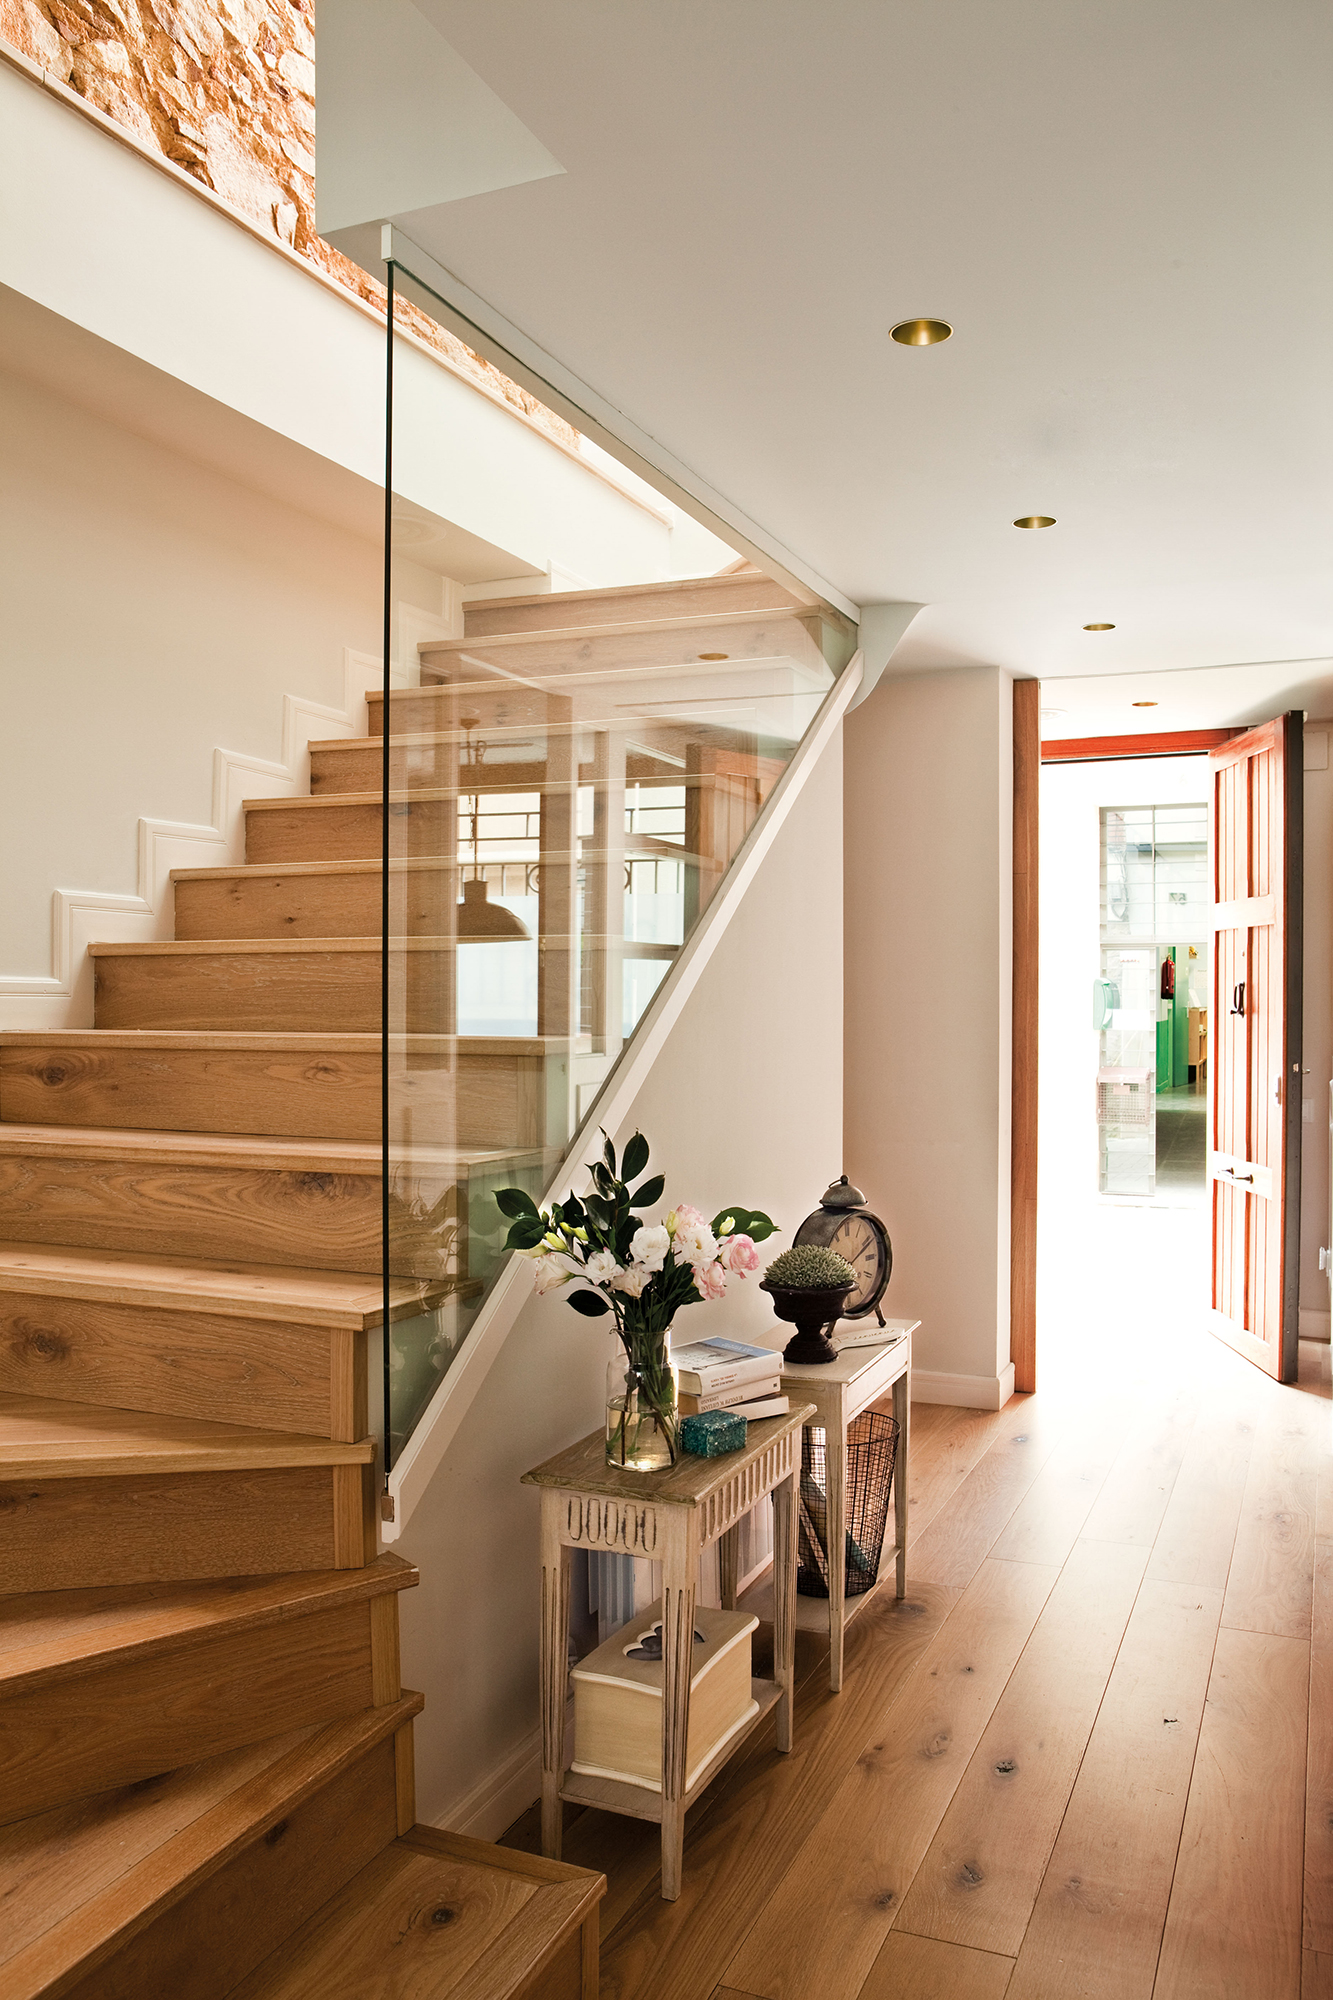 Recibidor con escalera de madera y barandilla de cristal decorado con dos consolas gemelas clásicas